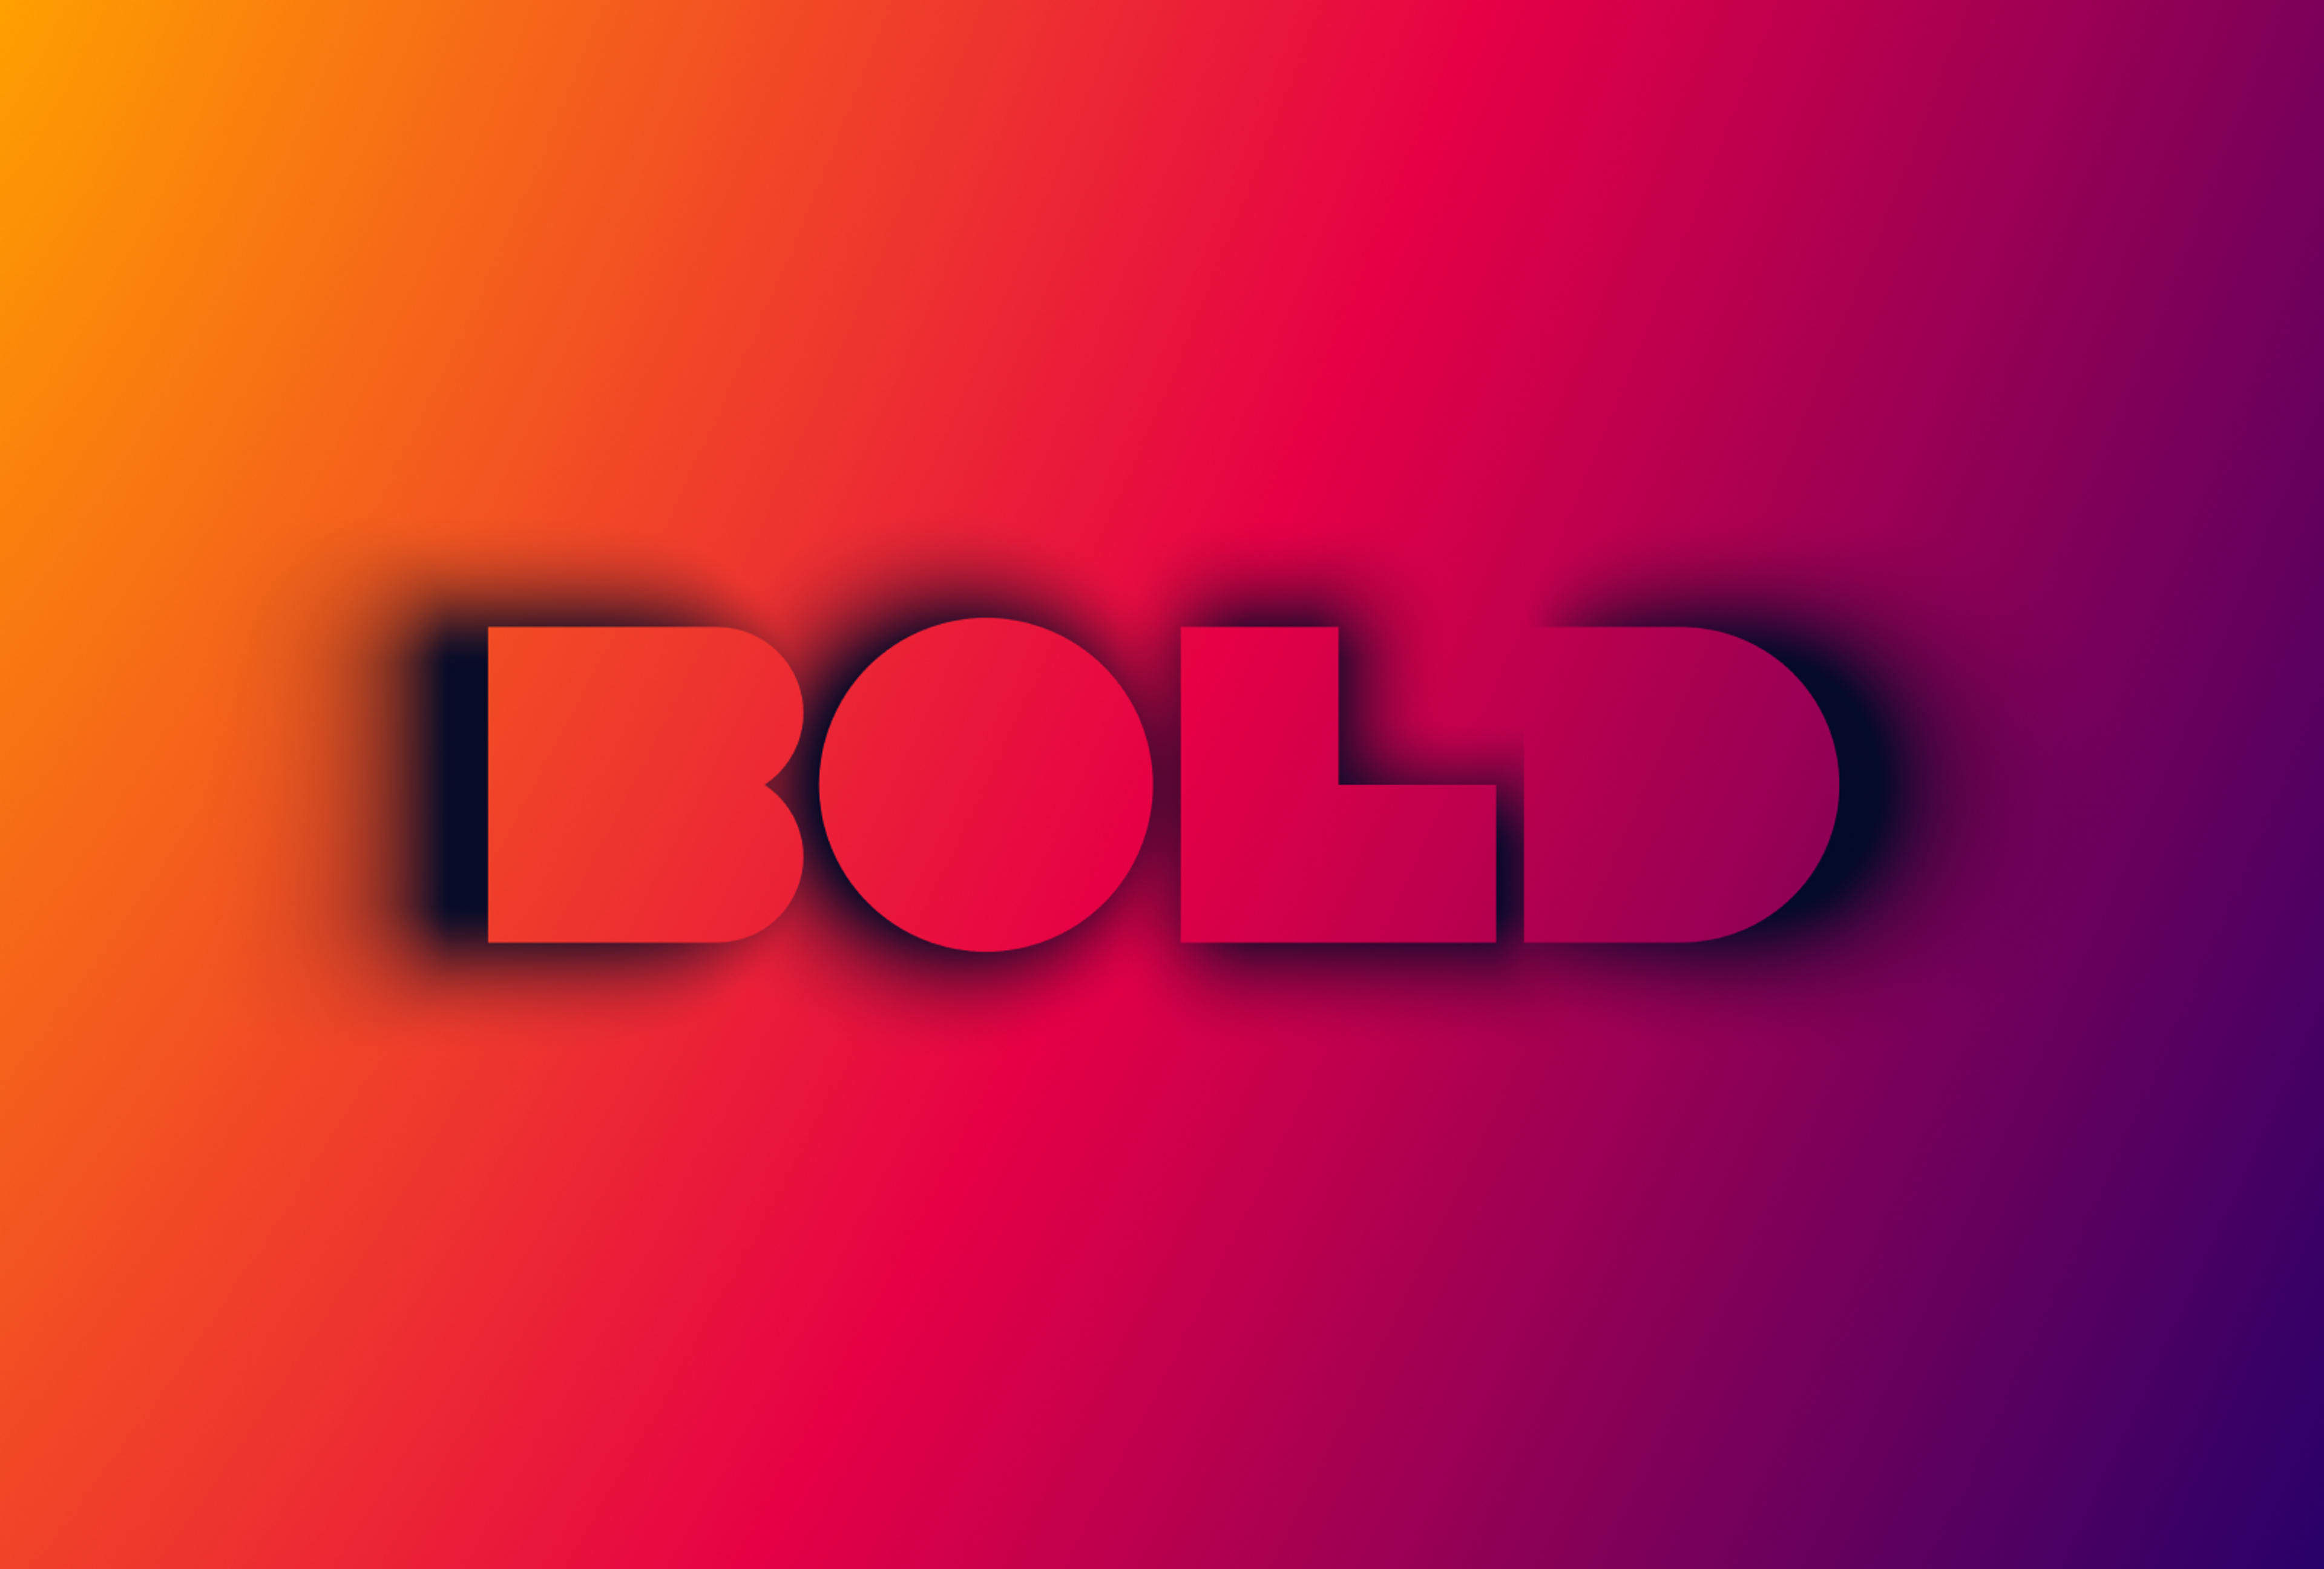 Bold Commerce Image